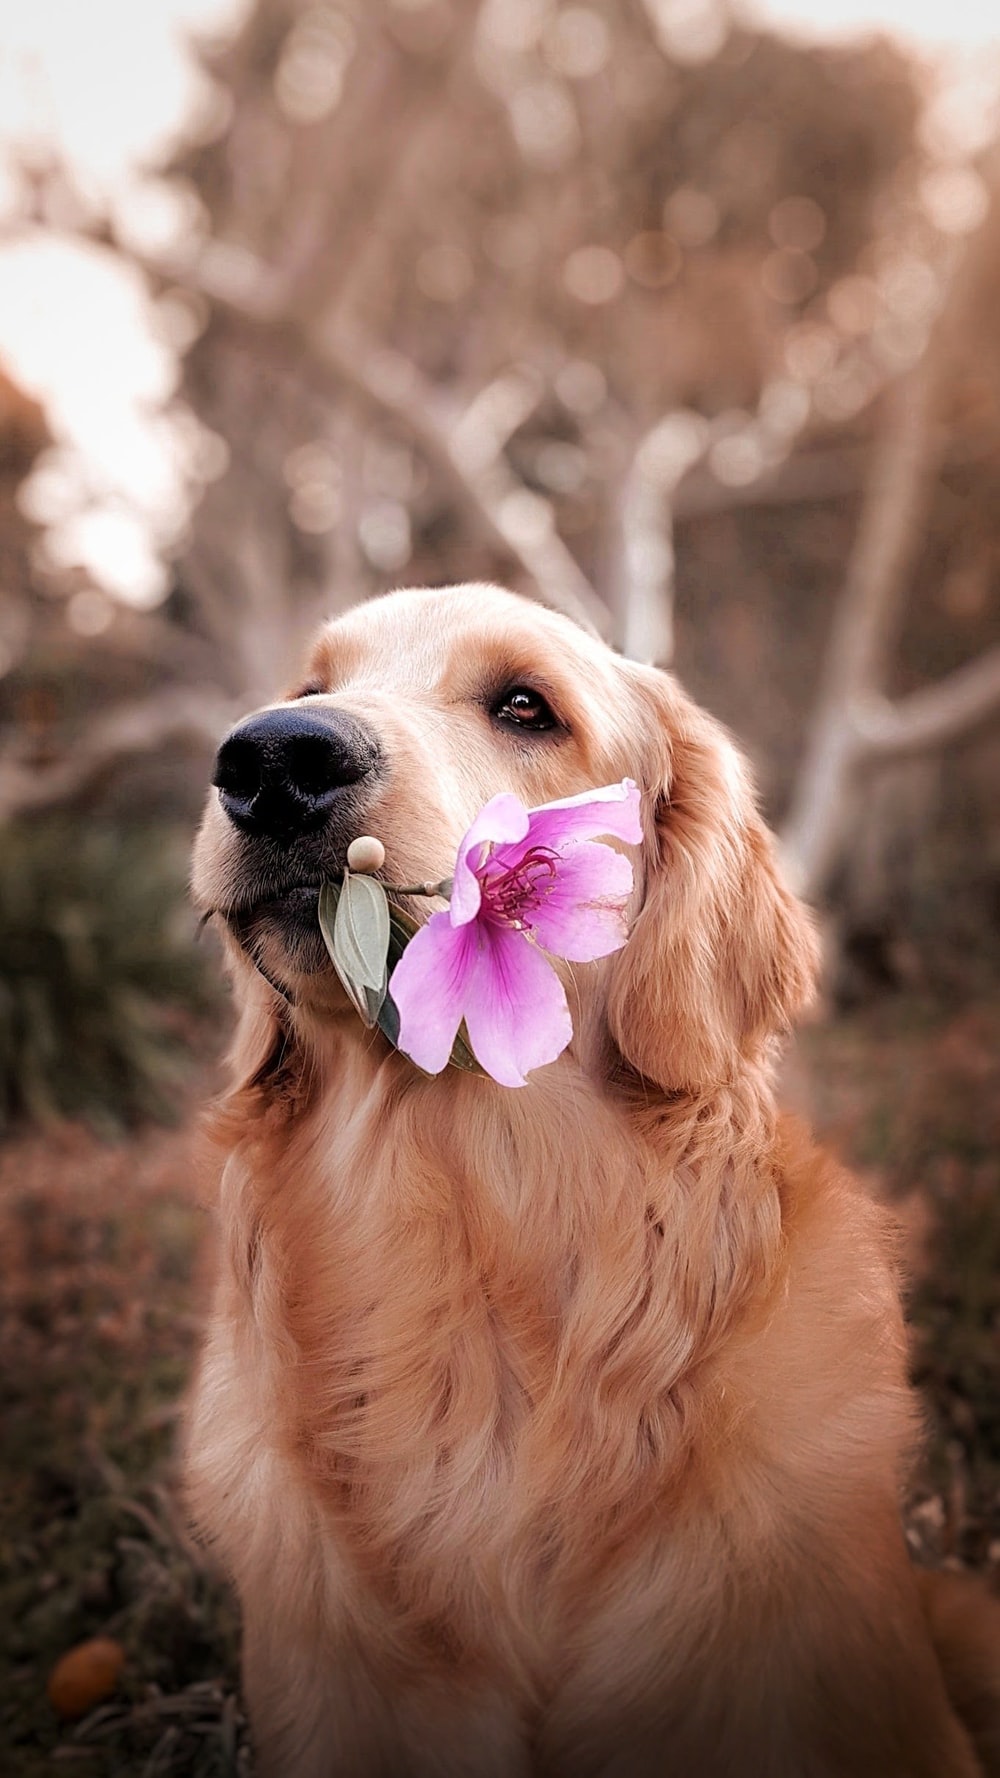 عکس خیلی زیبا از سگ دوست داشتنی با شاخ گل